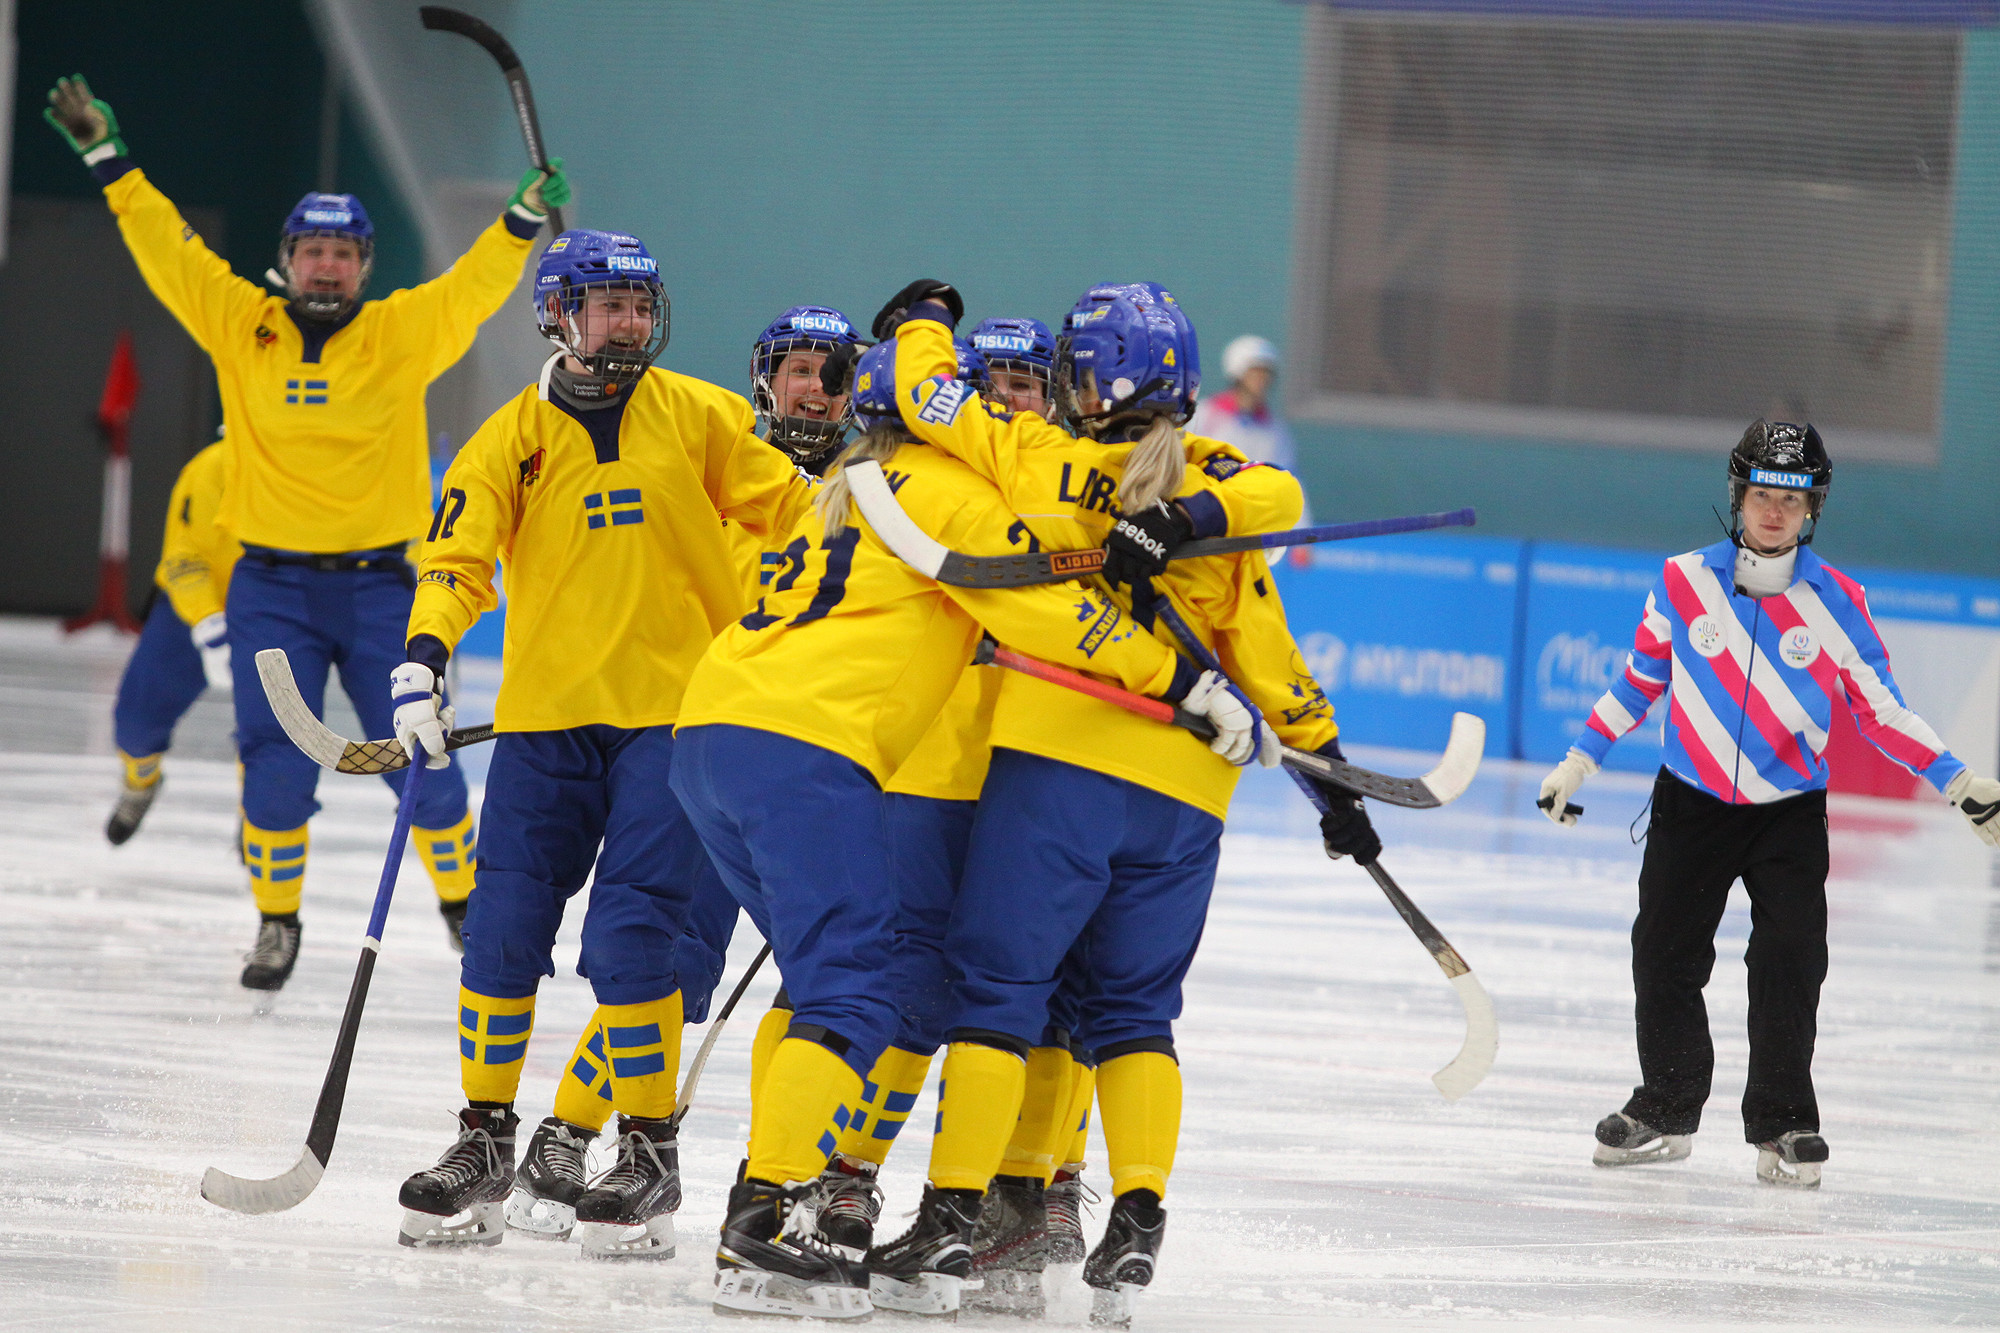 Despite being 2-0 down at half time, Sweden came back to win the final 5-3 ©Krasnoyarsk 2019